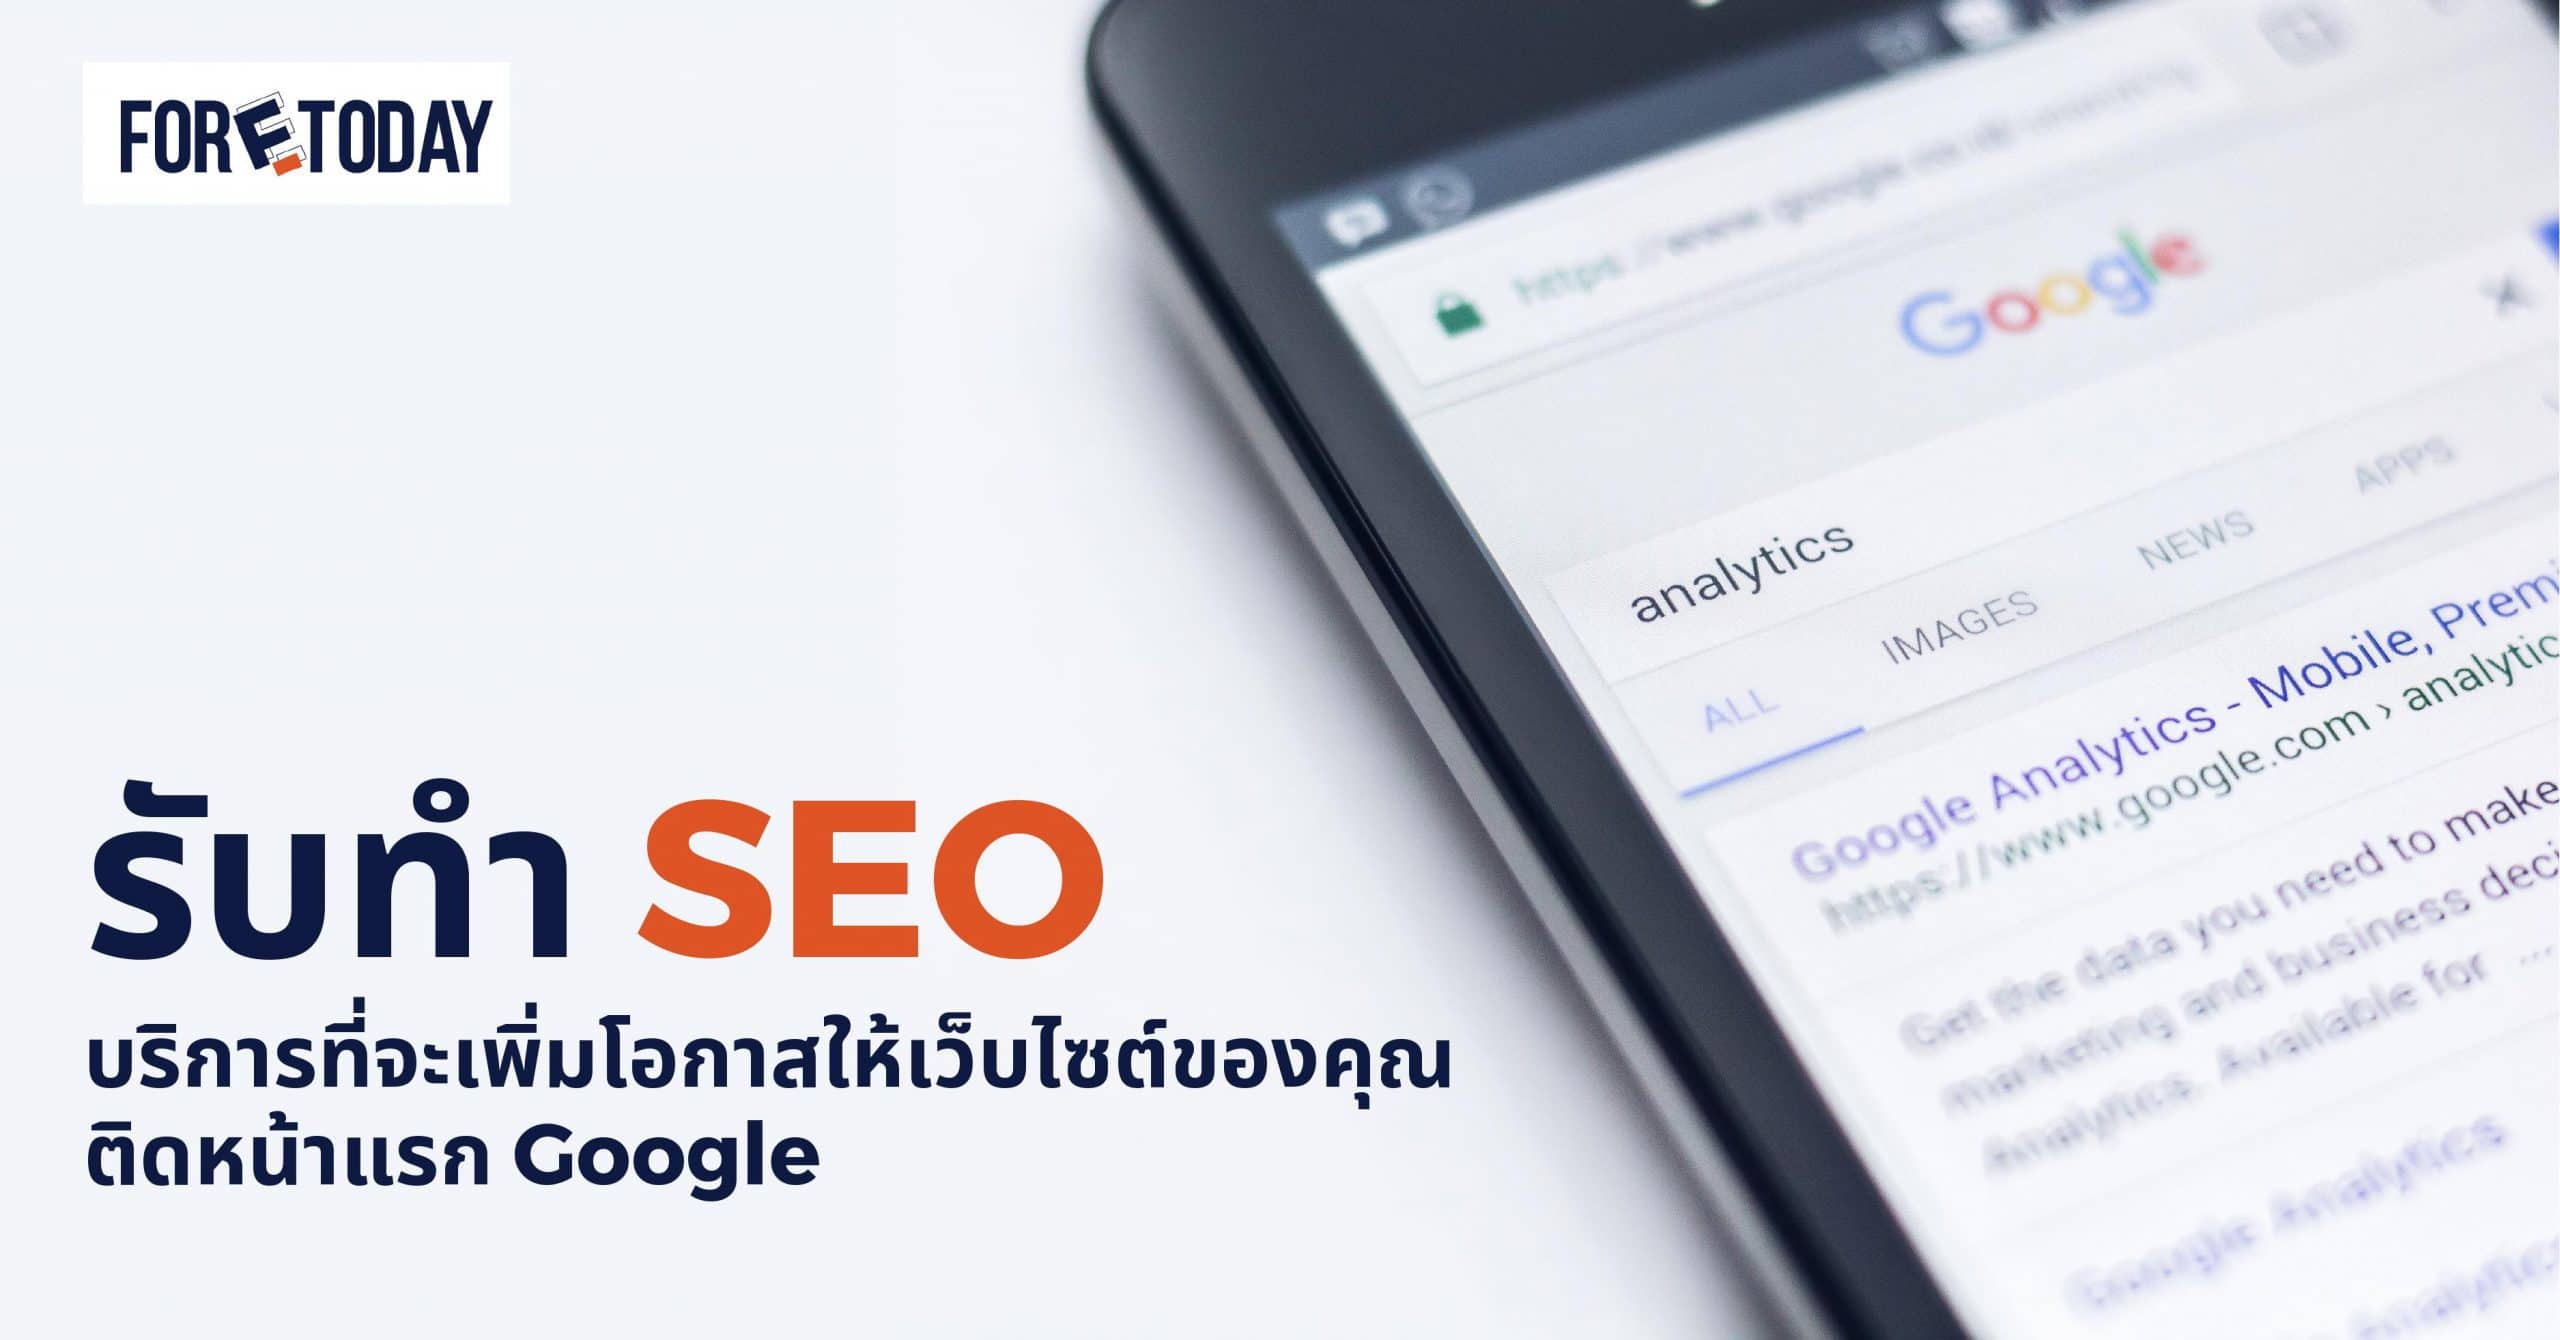 รับทำ Seo บริการที่จะเพิ่มโอกาสให้เว็บไซต์ของคุณติดหน้าแรก Google -  Foretoday